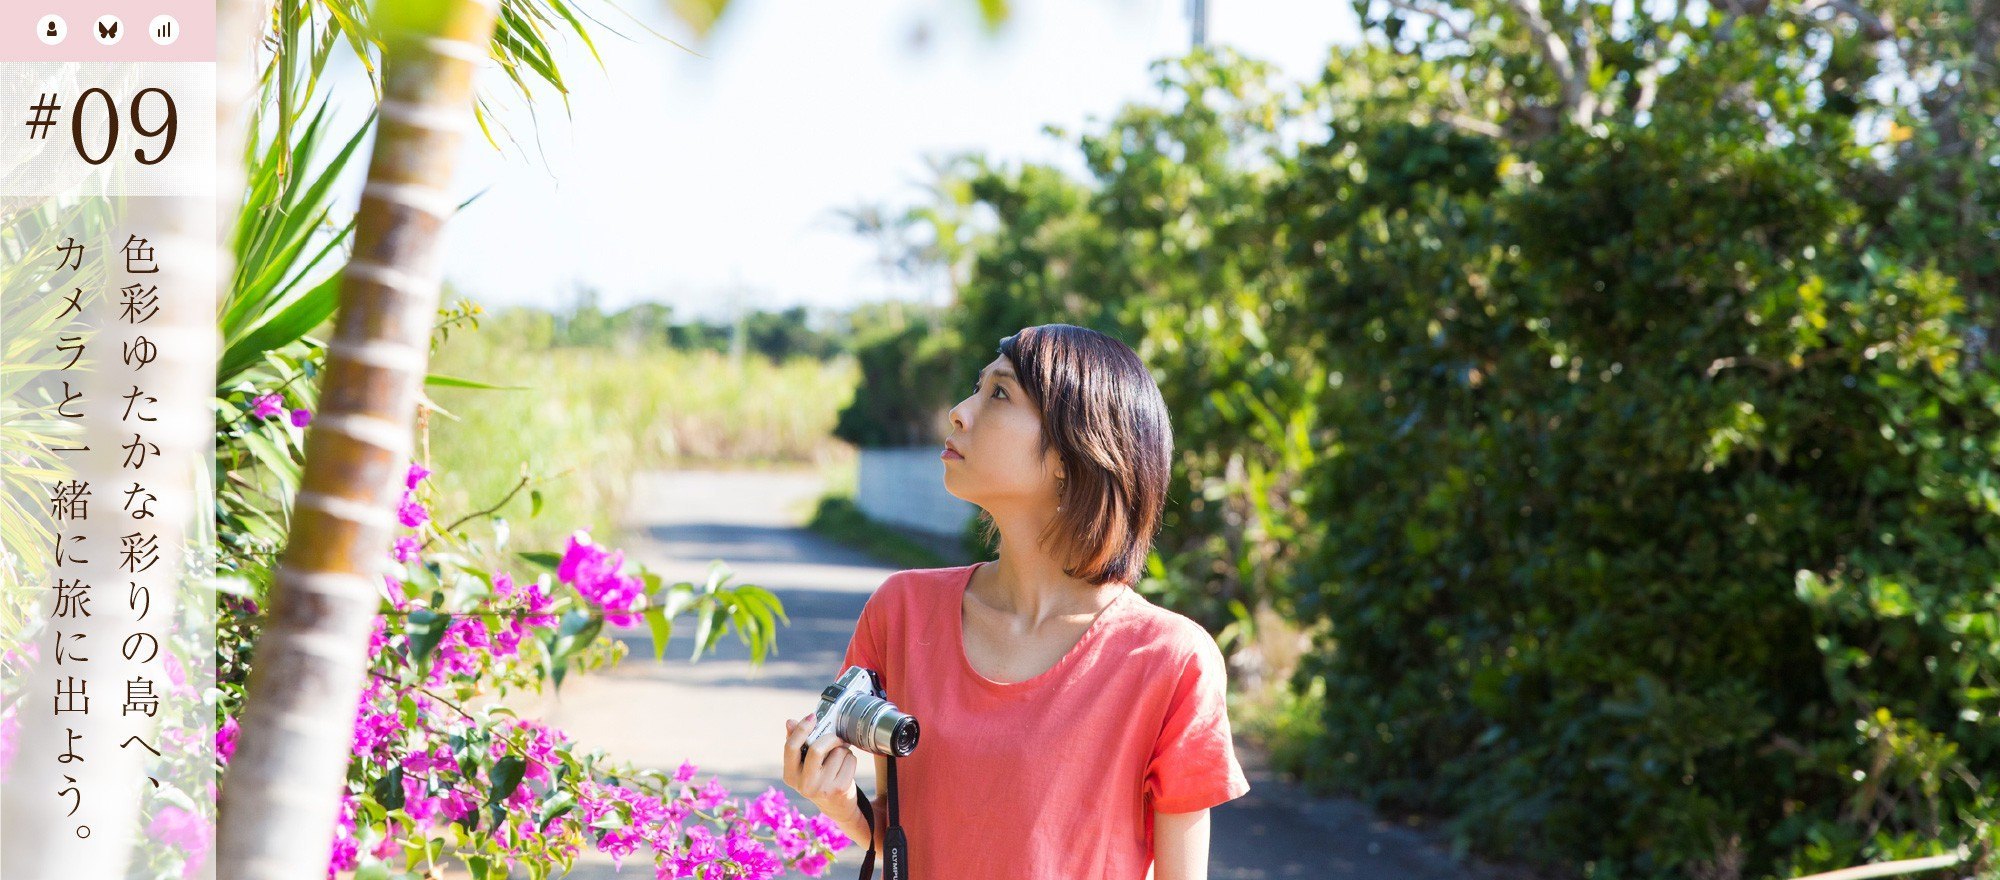 宮古島観光-色彩ゆたかな彩りの島へ、カメラと一緒に旅に出よう。